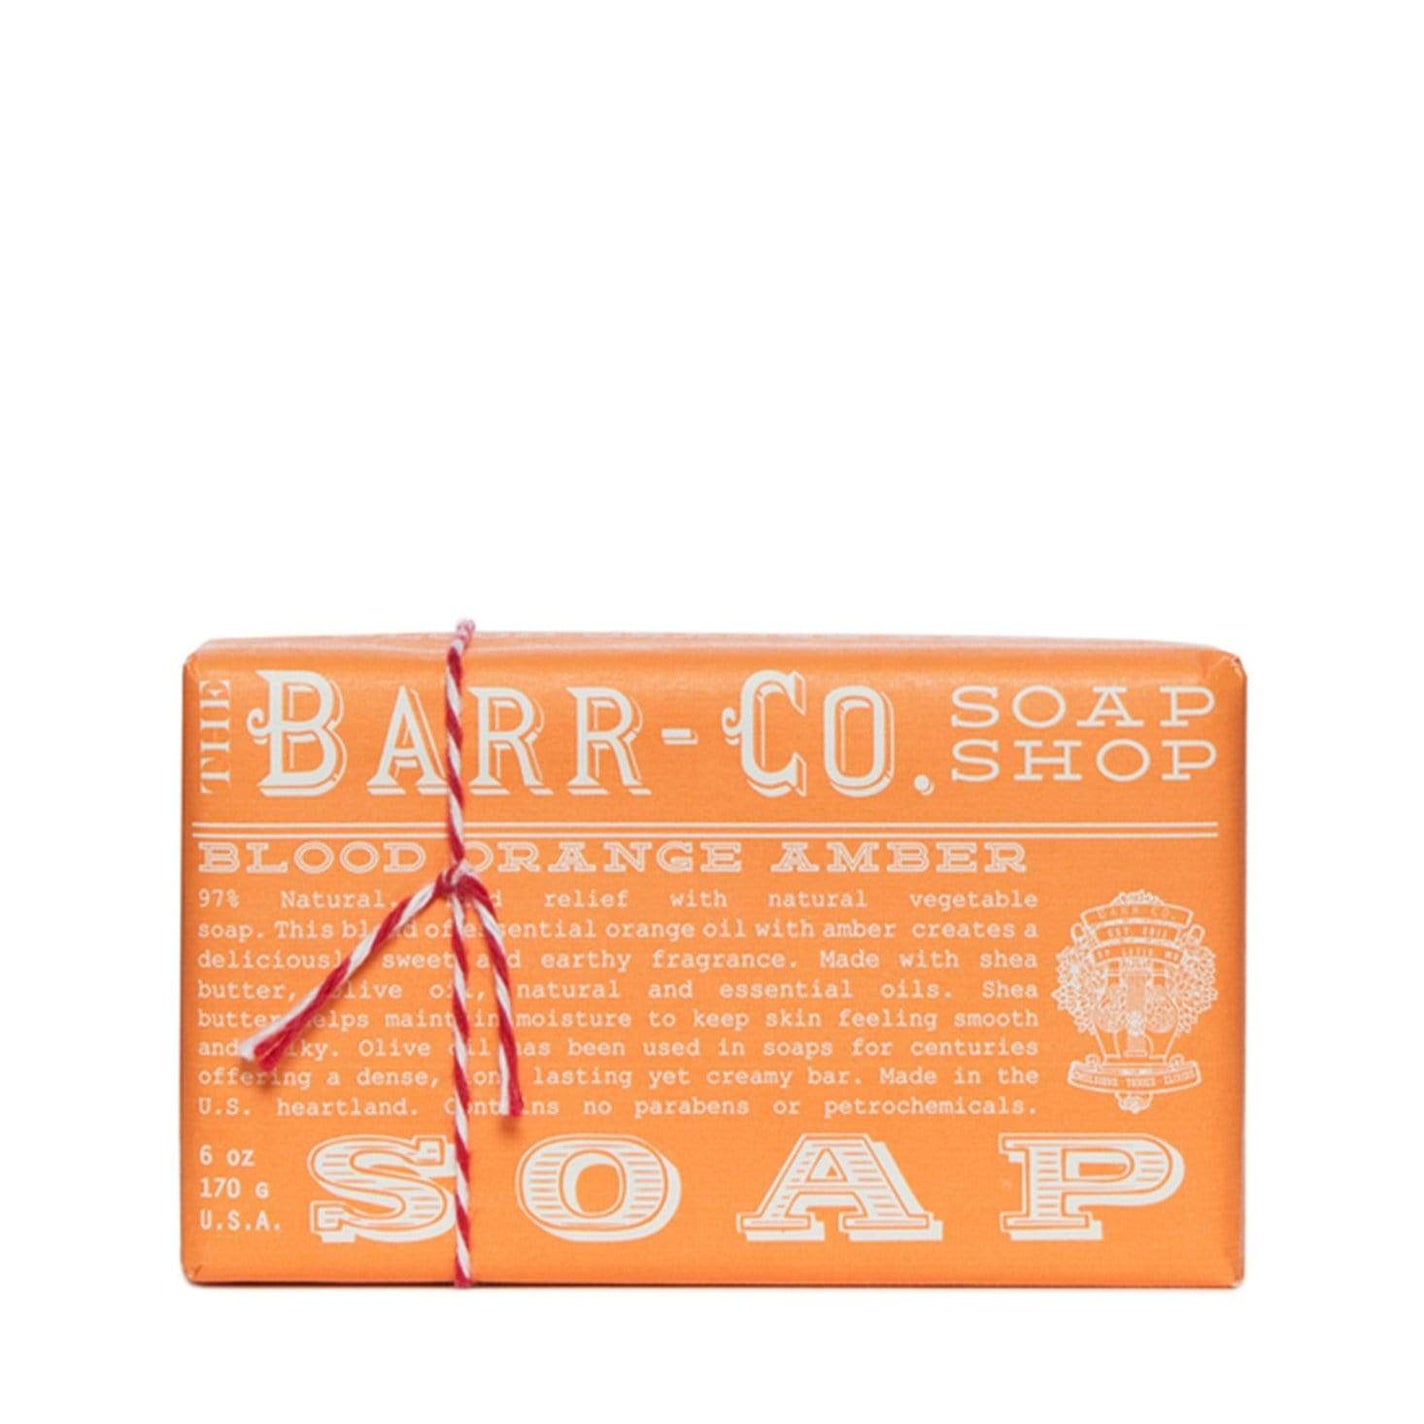 Barr-Co Blood Orange Amber Soap